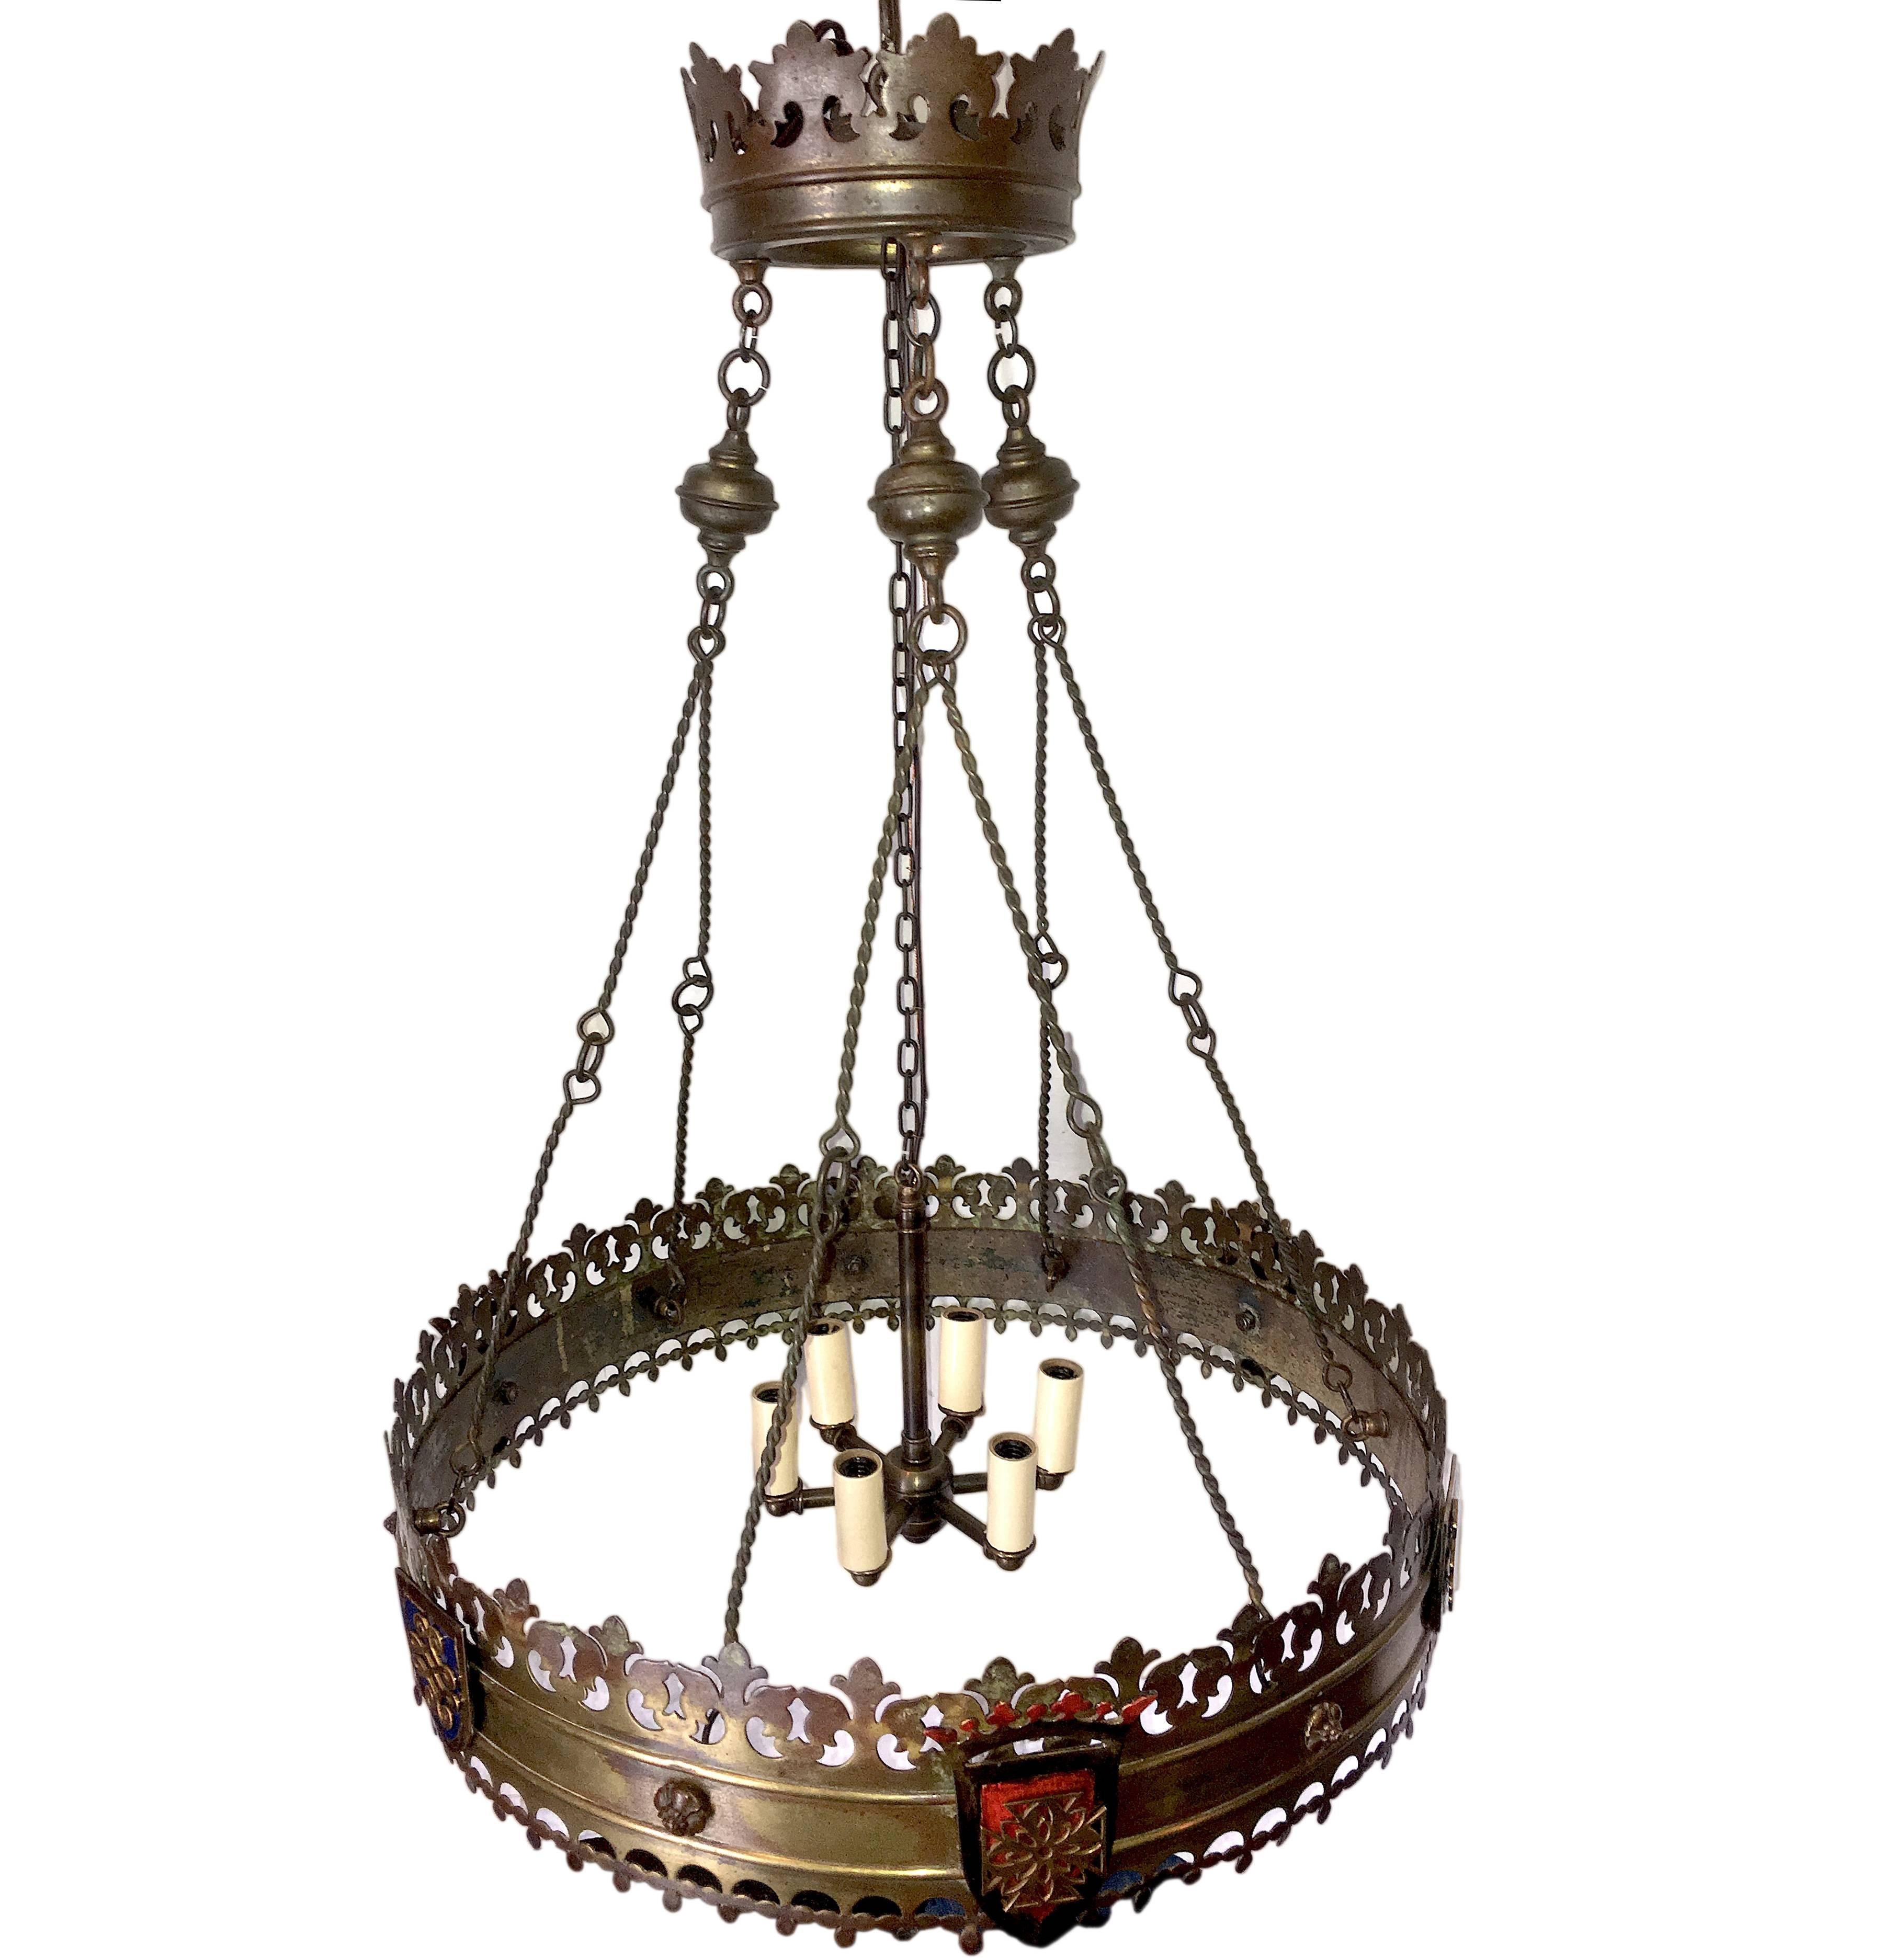 Ein englischer sechsflammiger Kronleuchter aus Bronzeguss um 1910 mit Schilden und Kronen, originaler Patina und Farbdetails.

Abmessungen:
Durchmesser: 20